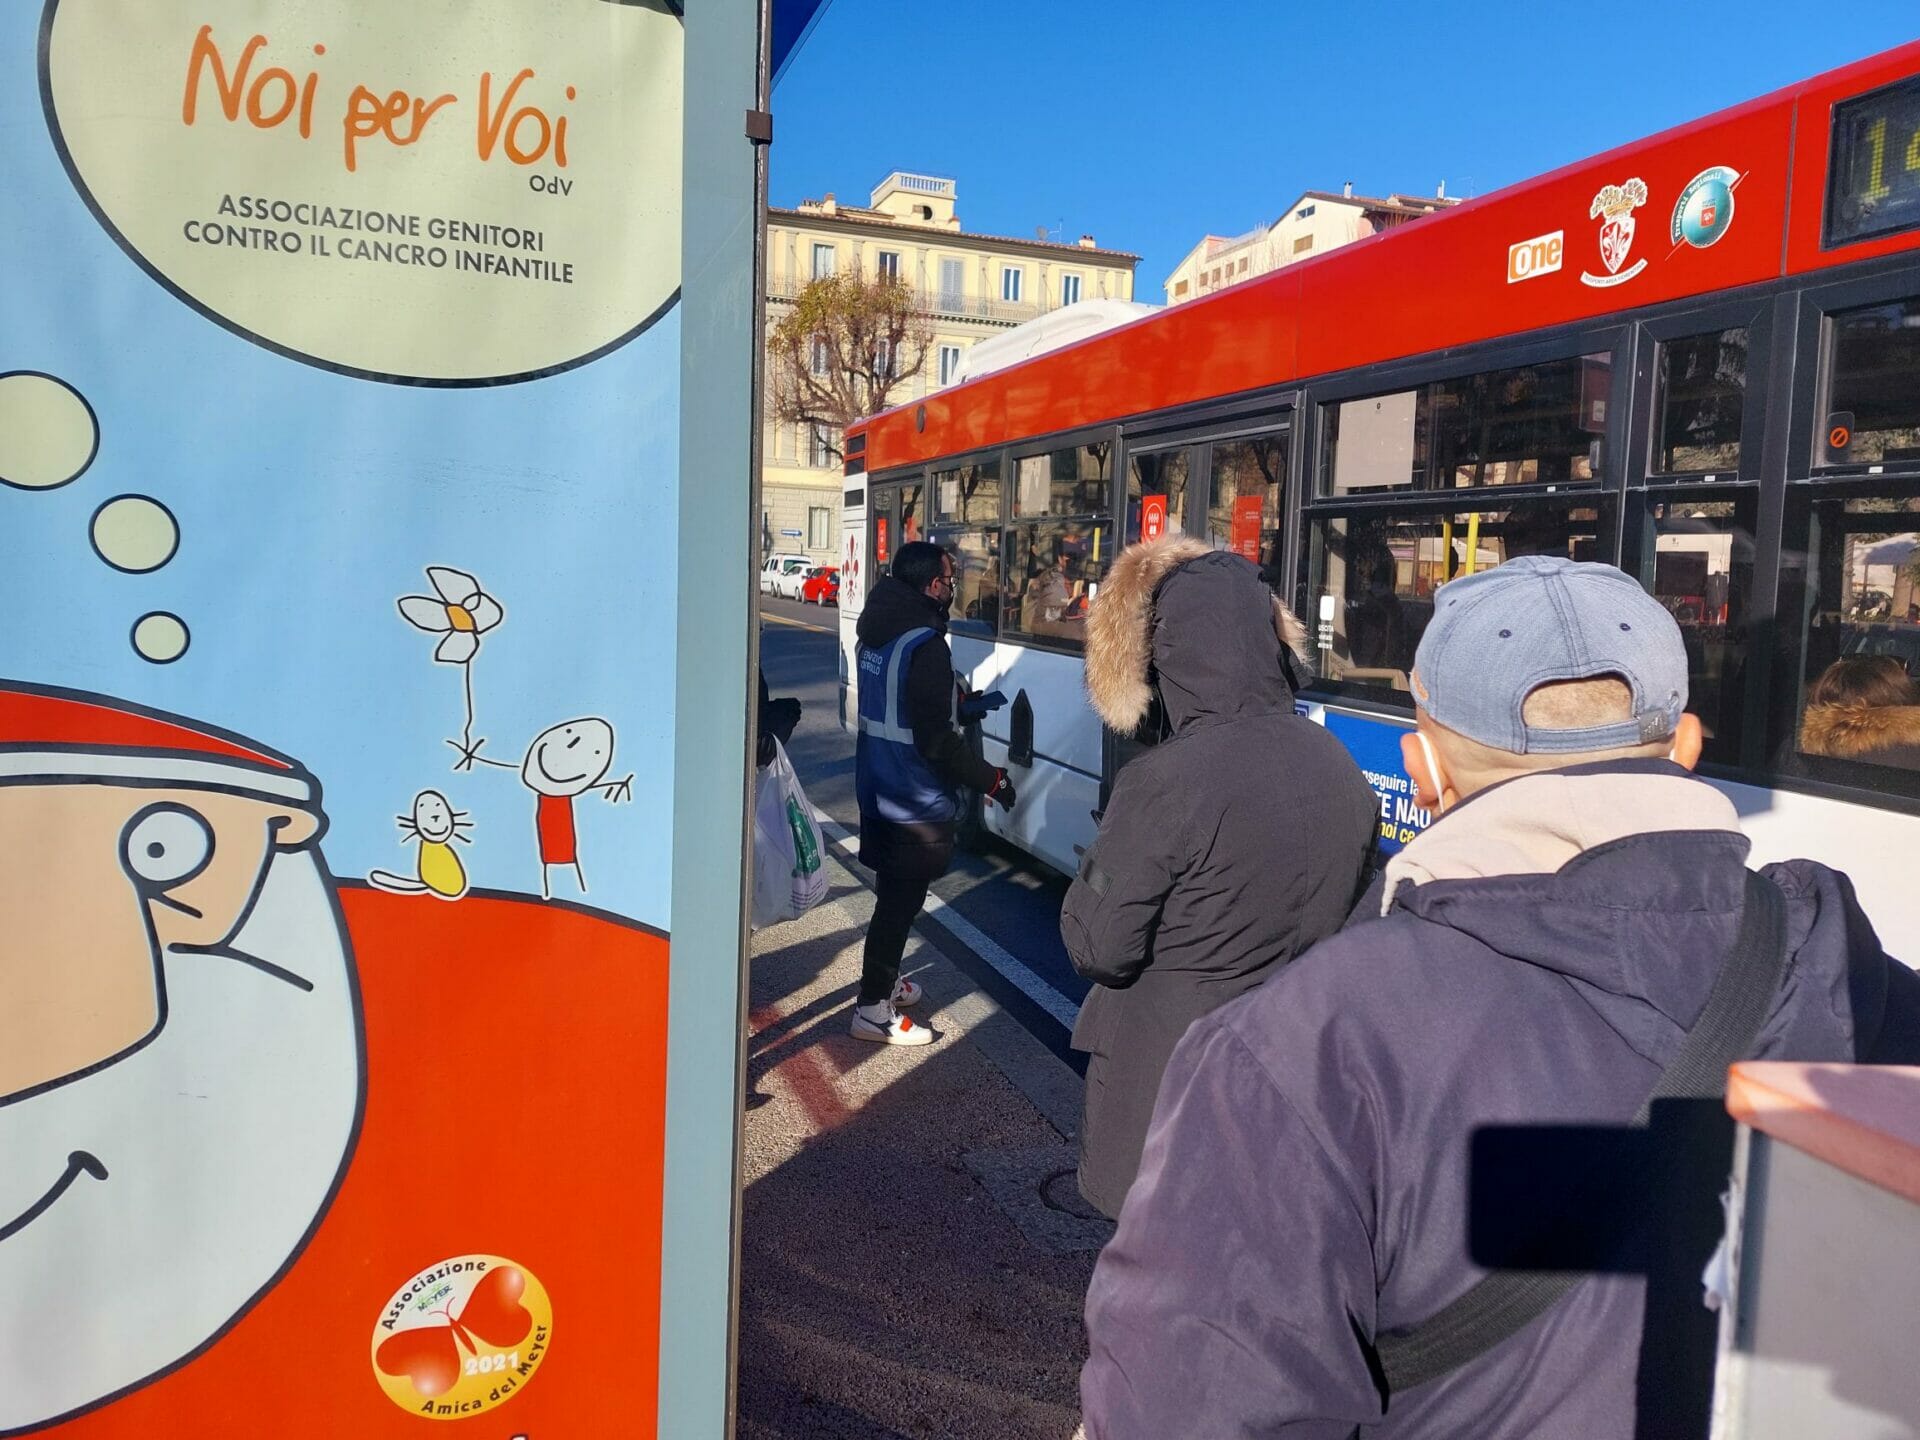 “Salgo sul bus”, la campagna di Autolinee Toscane per l’uso corretto della mascherina